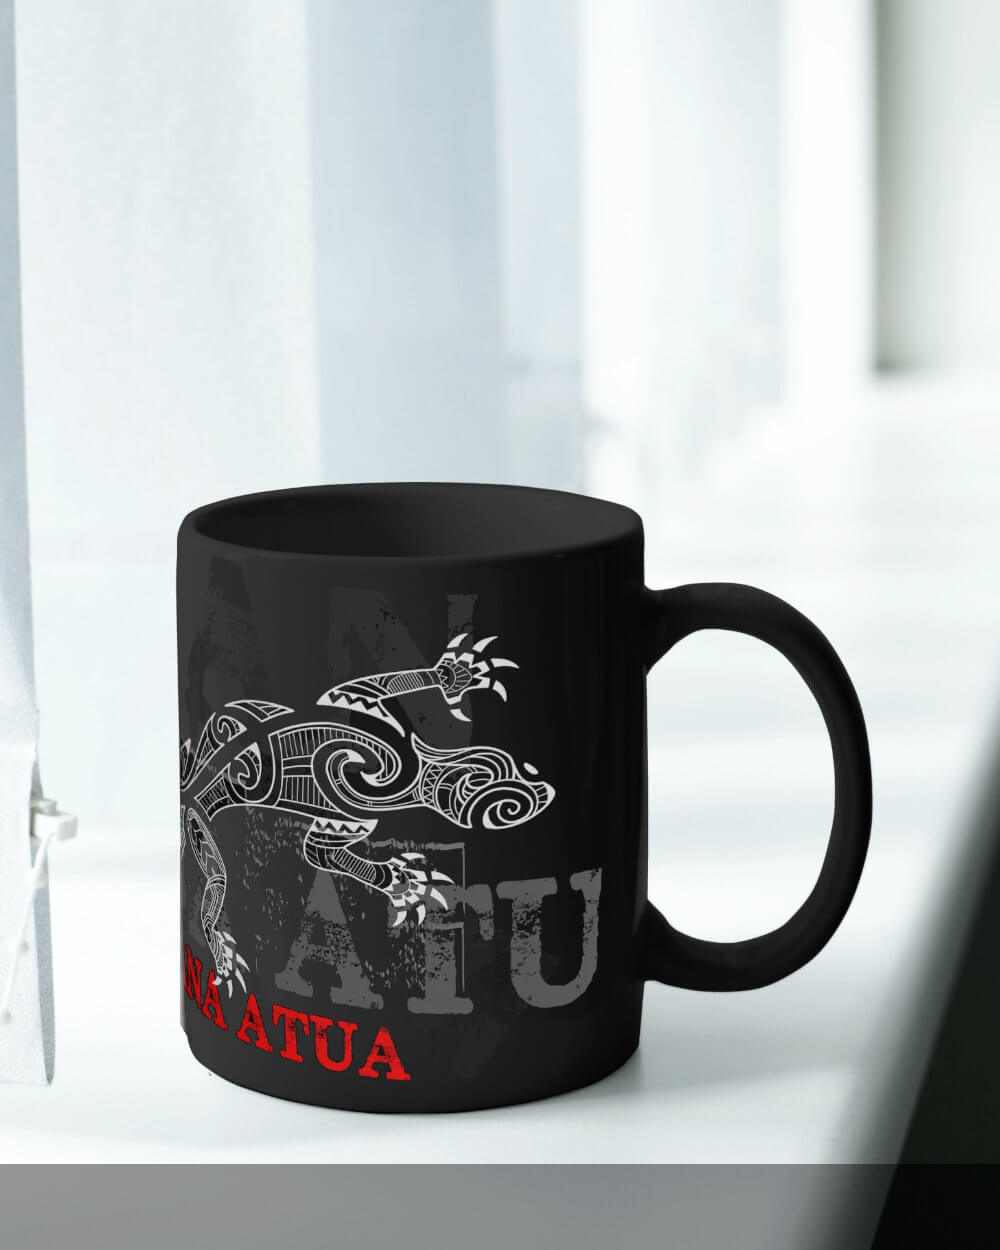 Mana Atua black coffee tea mug with white maori lizard tattoo